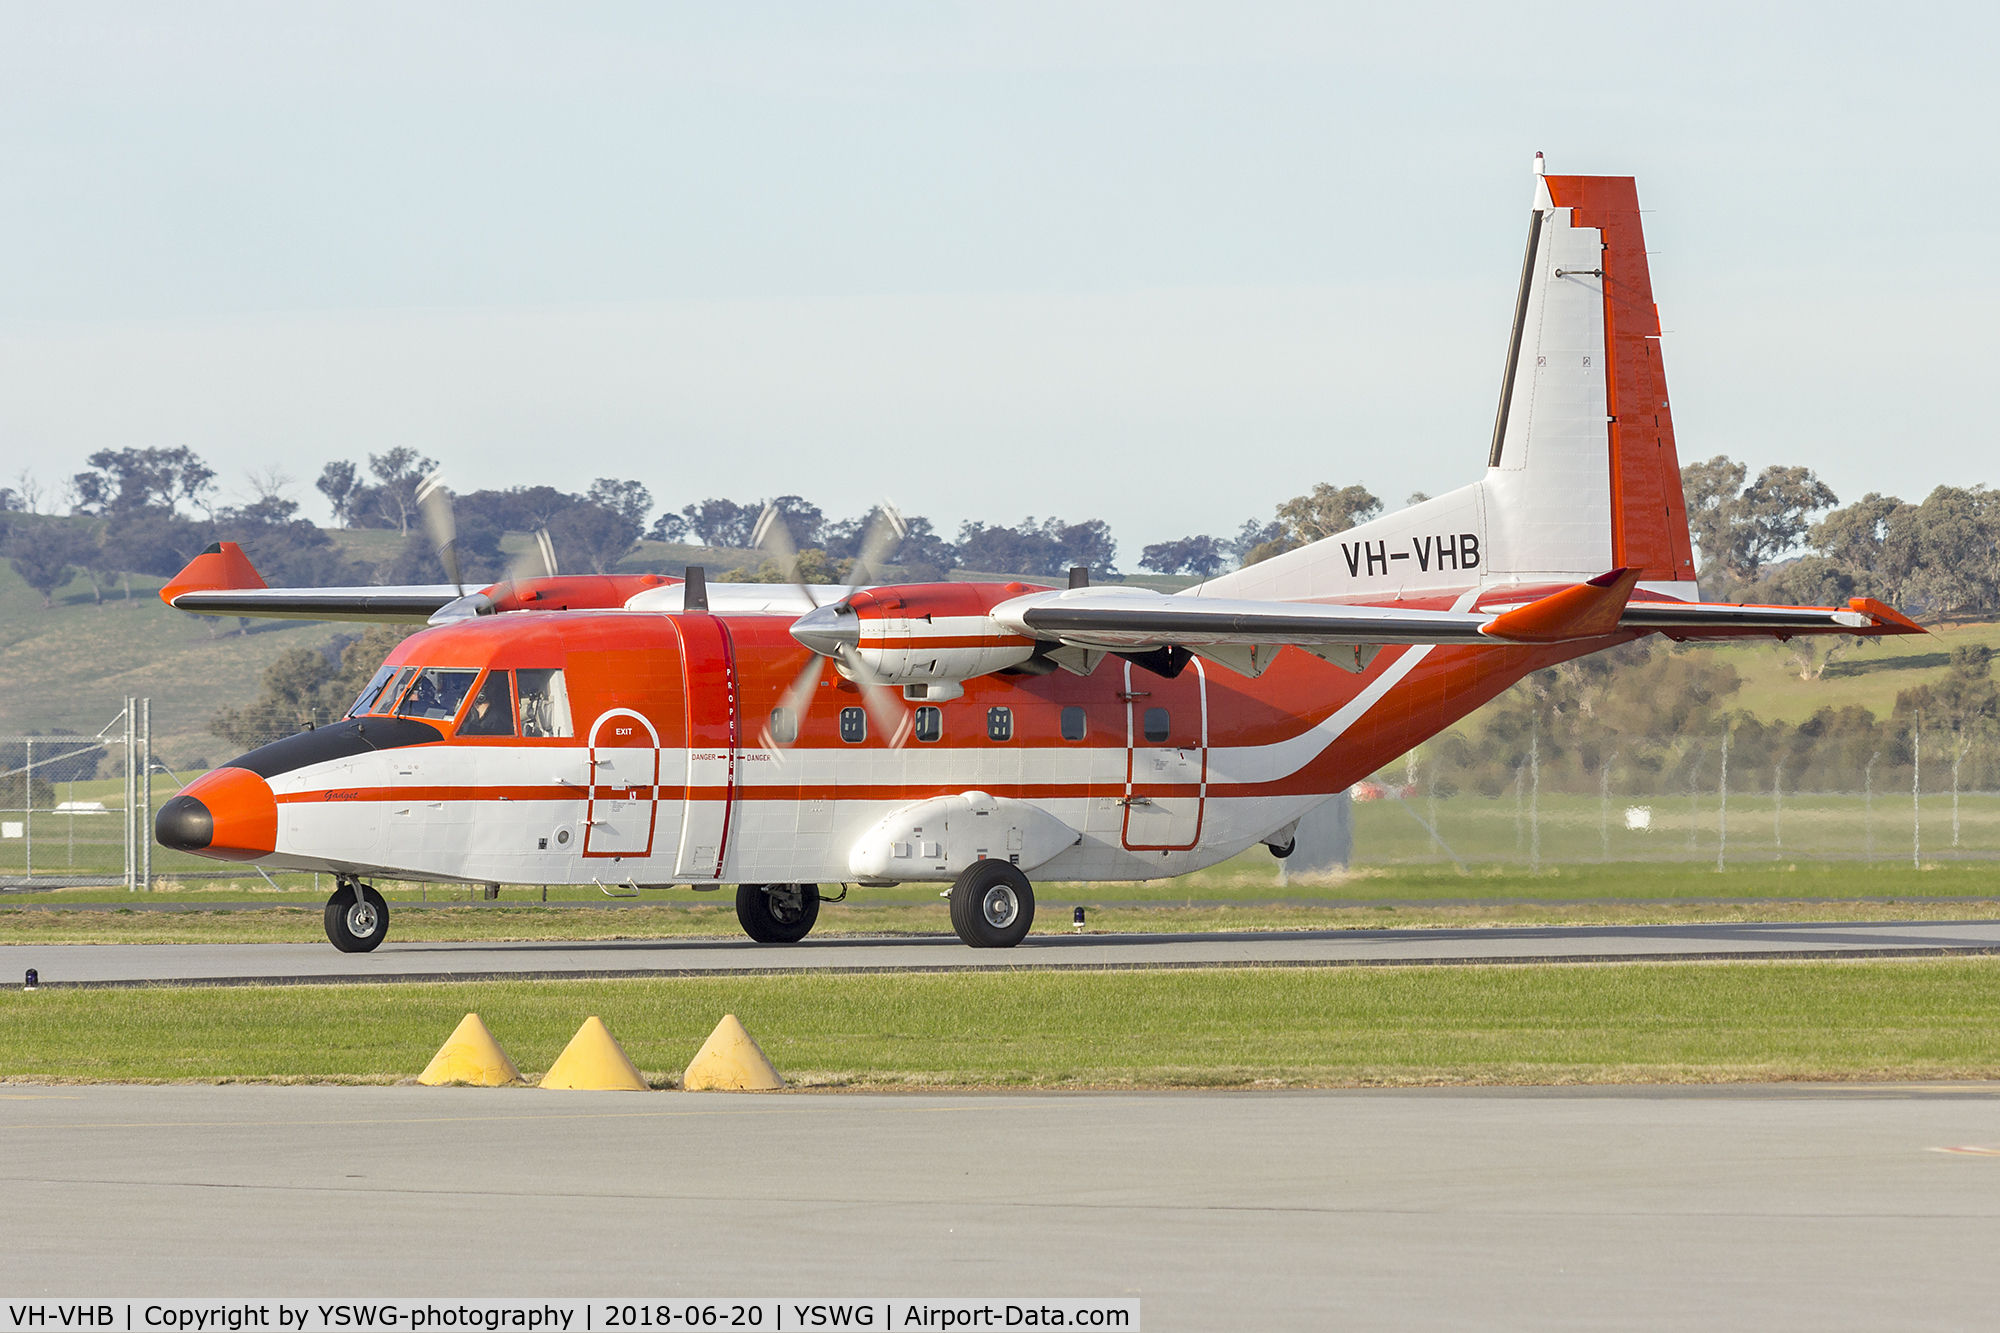 VH-VHB, 2004 CASA C-212-EE Aviocar C/N 475, Skytraders (VH-VHB) CASA C-212-400 Aviocar at Wagga Wagga Airport